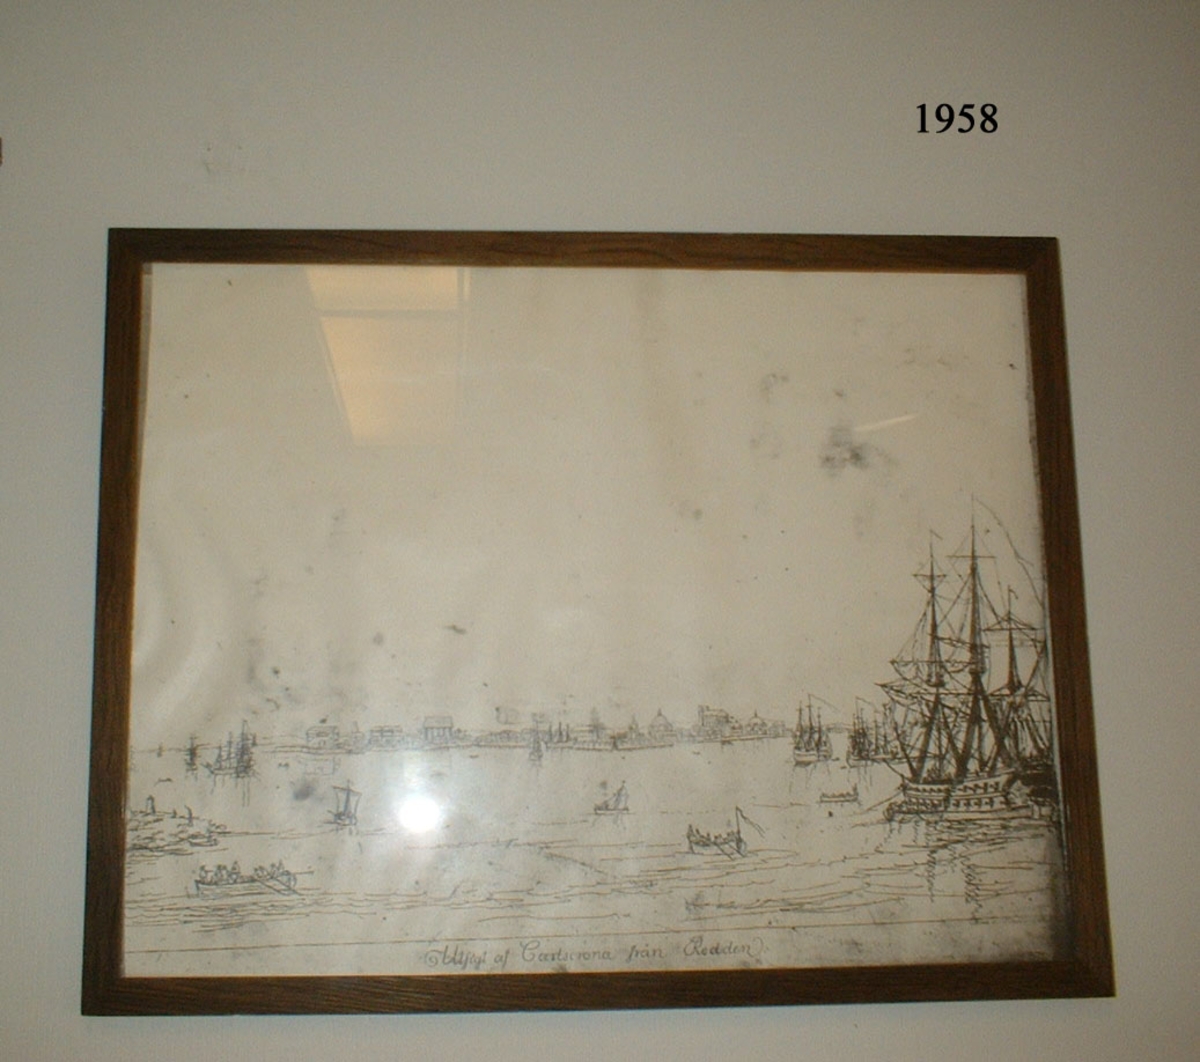 Fotokopia efter originalritning "Utsikt över redden af Carlscrona", ritad av Joh. P. Cumlin år 1787. Inom glas och ram.